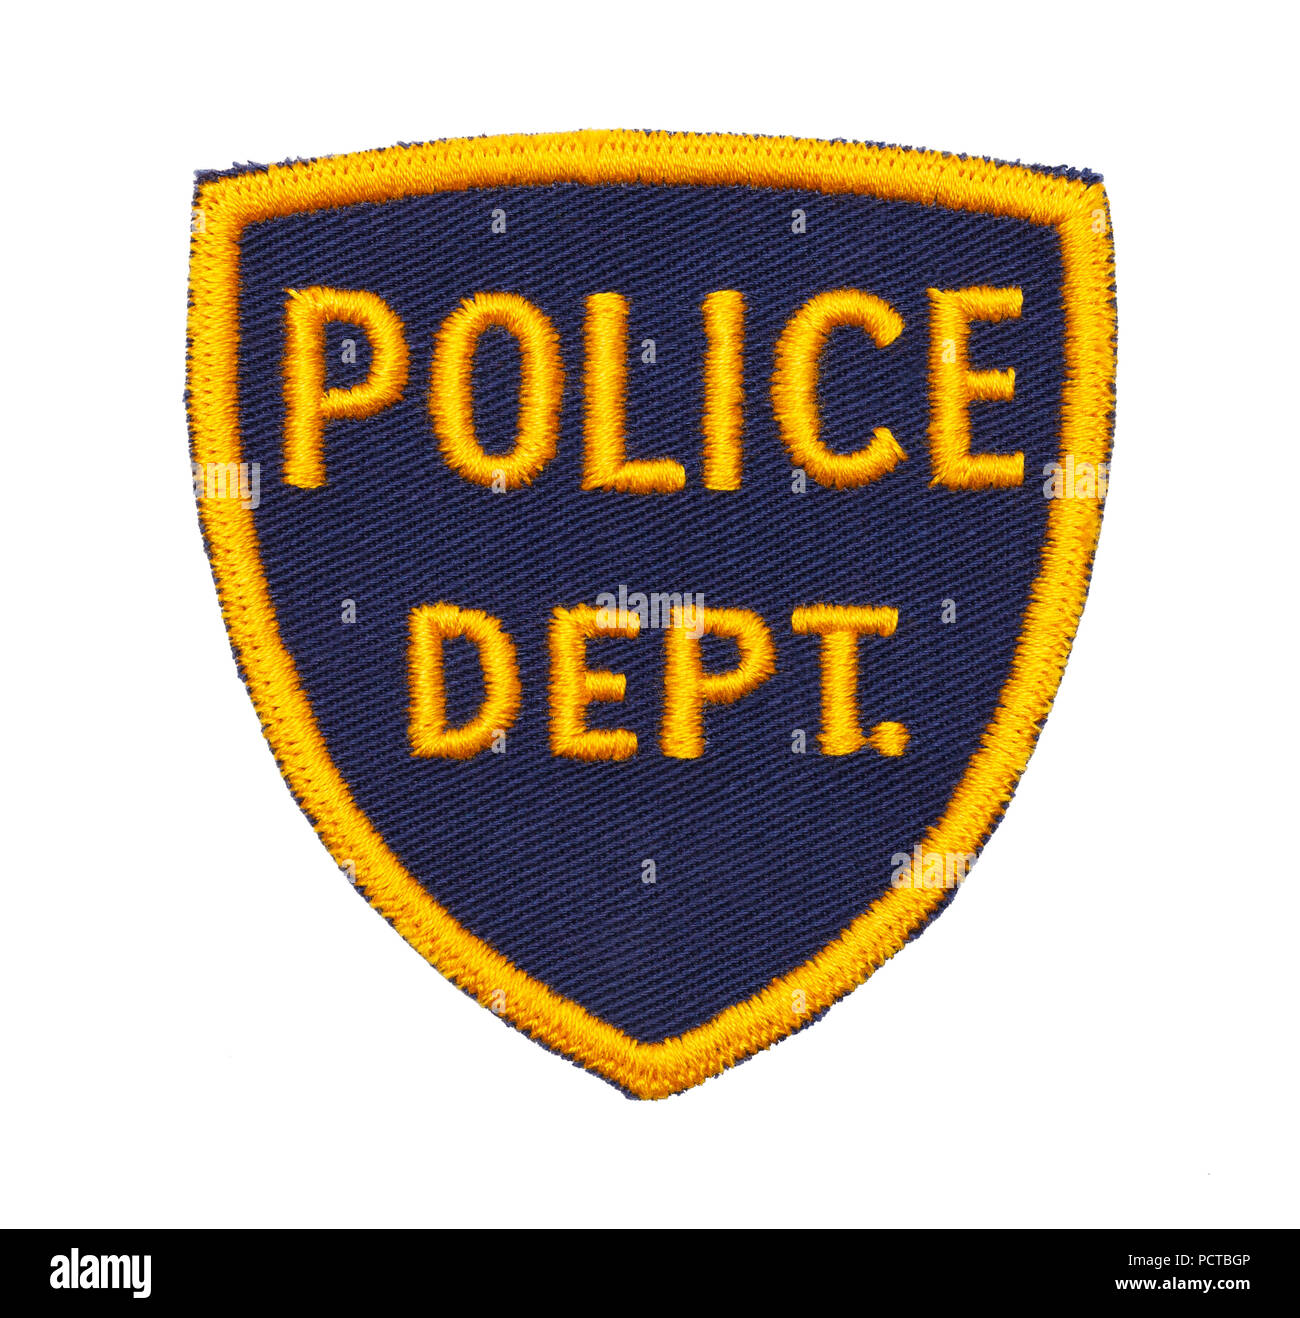 Kleine Polizeiabteilung Shield Patch isoliert auf einem weißen Hintergrund. Stockfoto